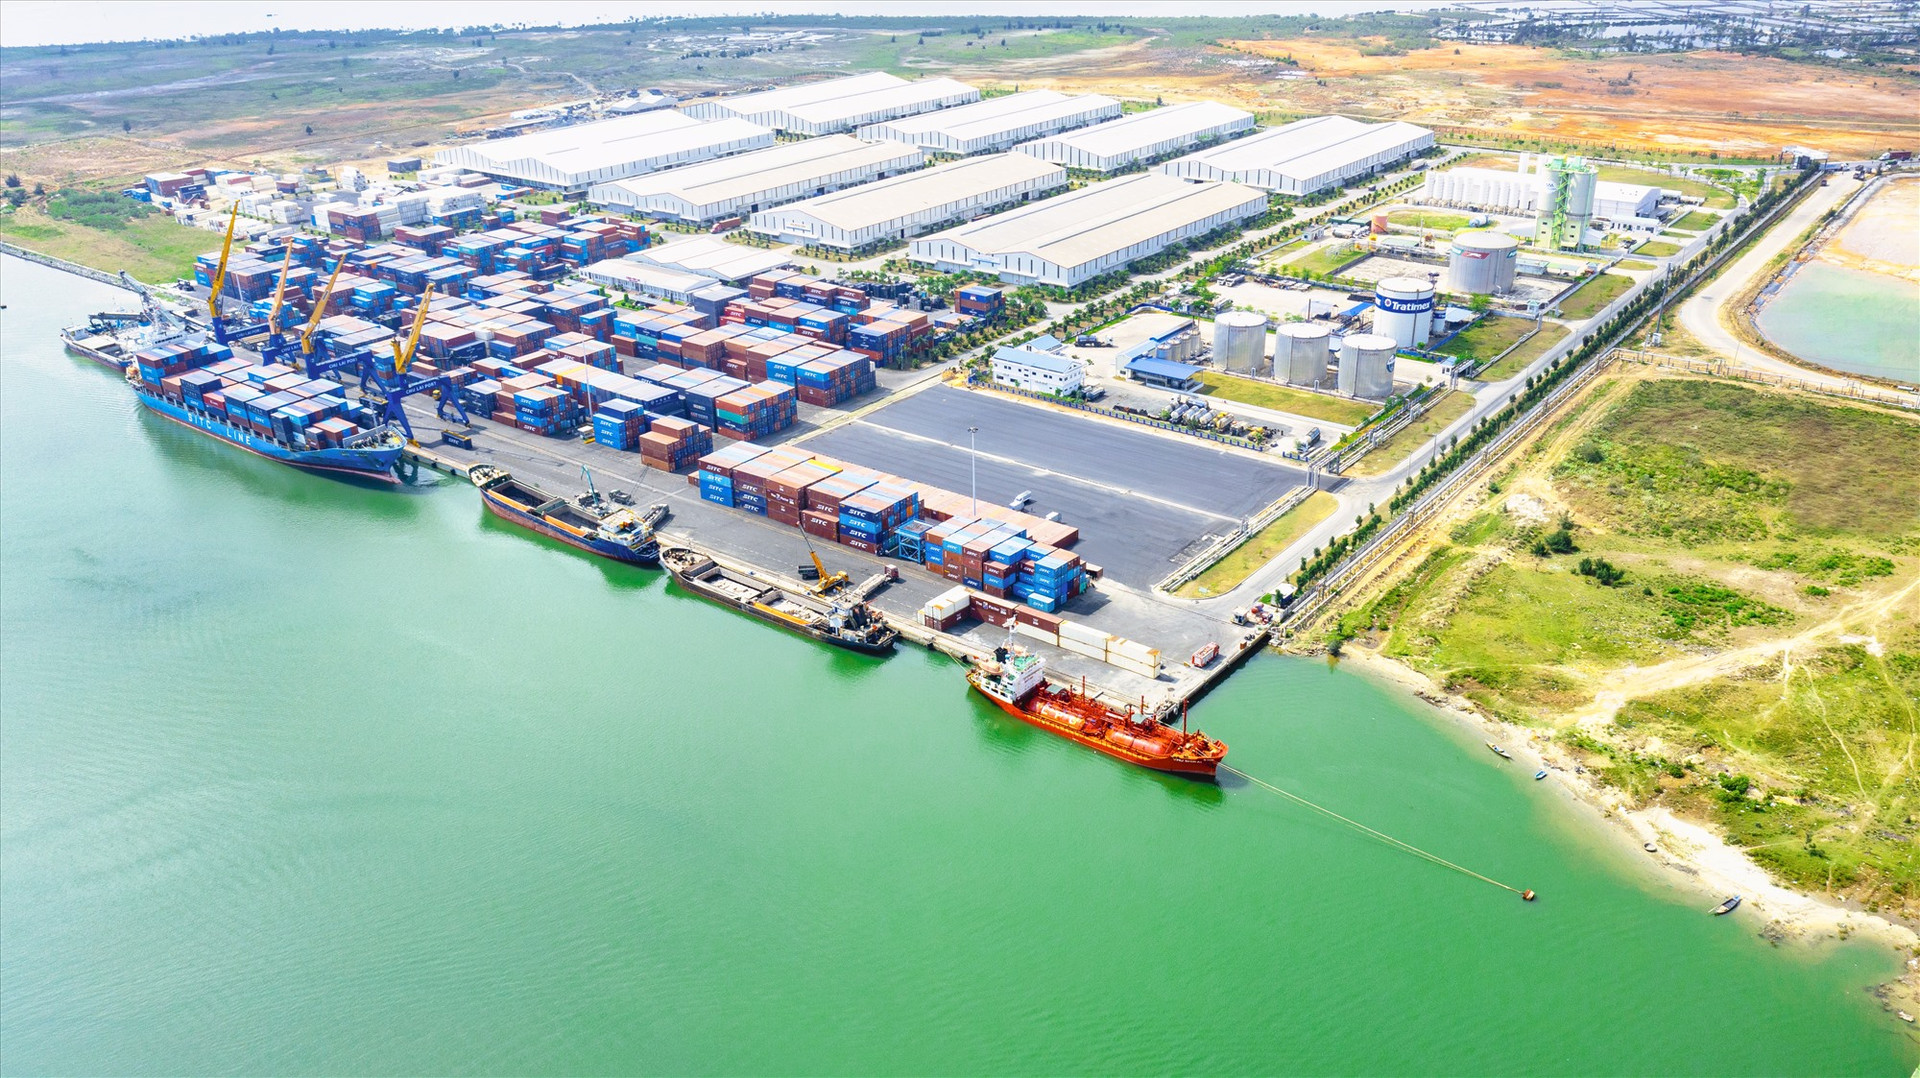 Cảng Chu Lai - cửa ngõ giao thương hàng hóa của Miền Trung Việt Nam.